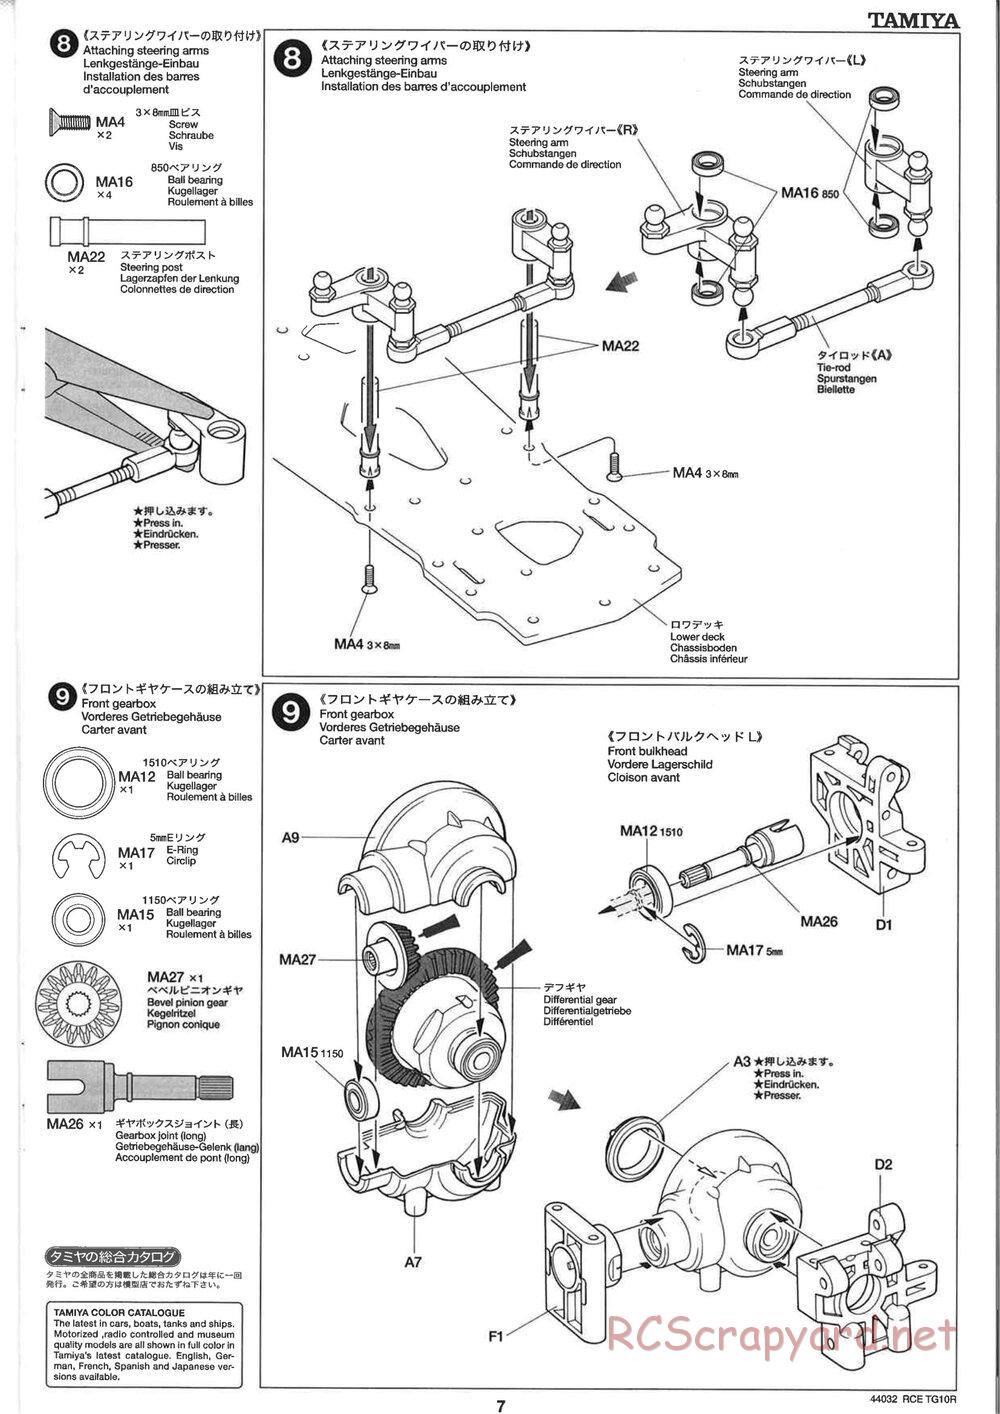 Tamiya - TG10R Chassis - Manual - Page 7